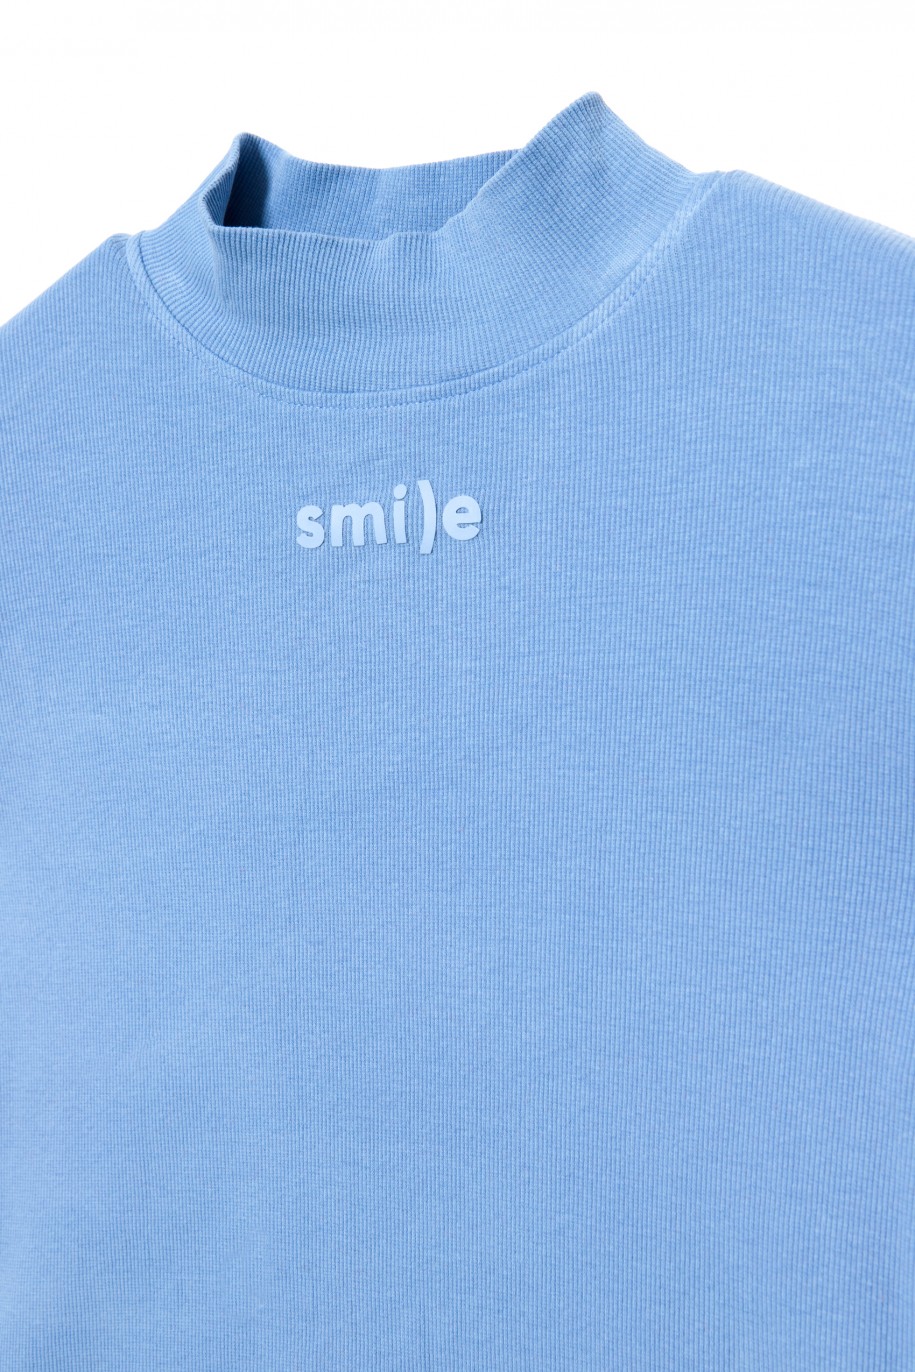 Niebieska bluzka z długim rękawem dla dziewczyny SMILE - 31189